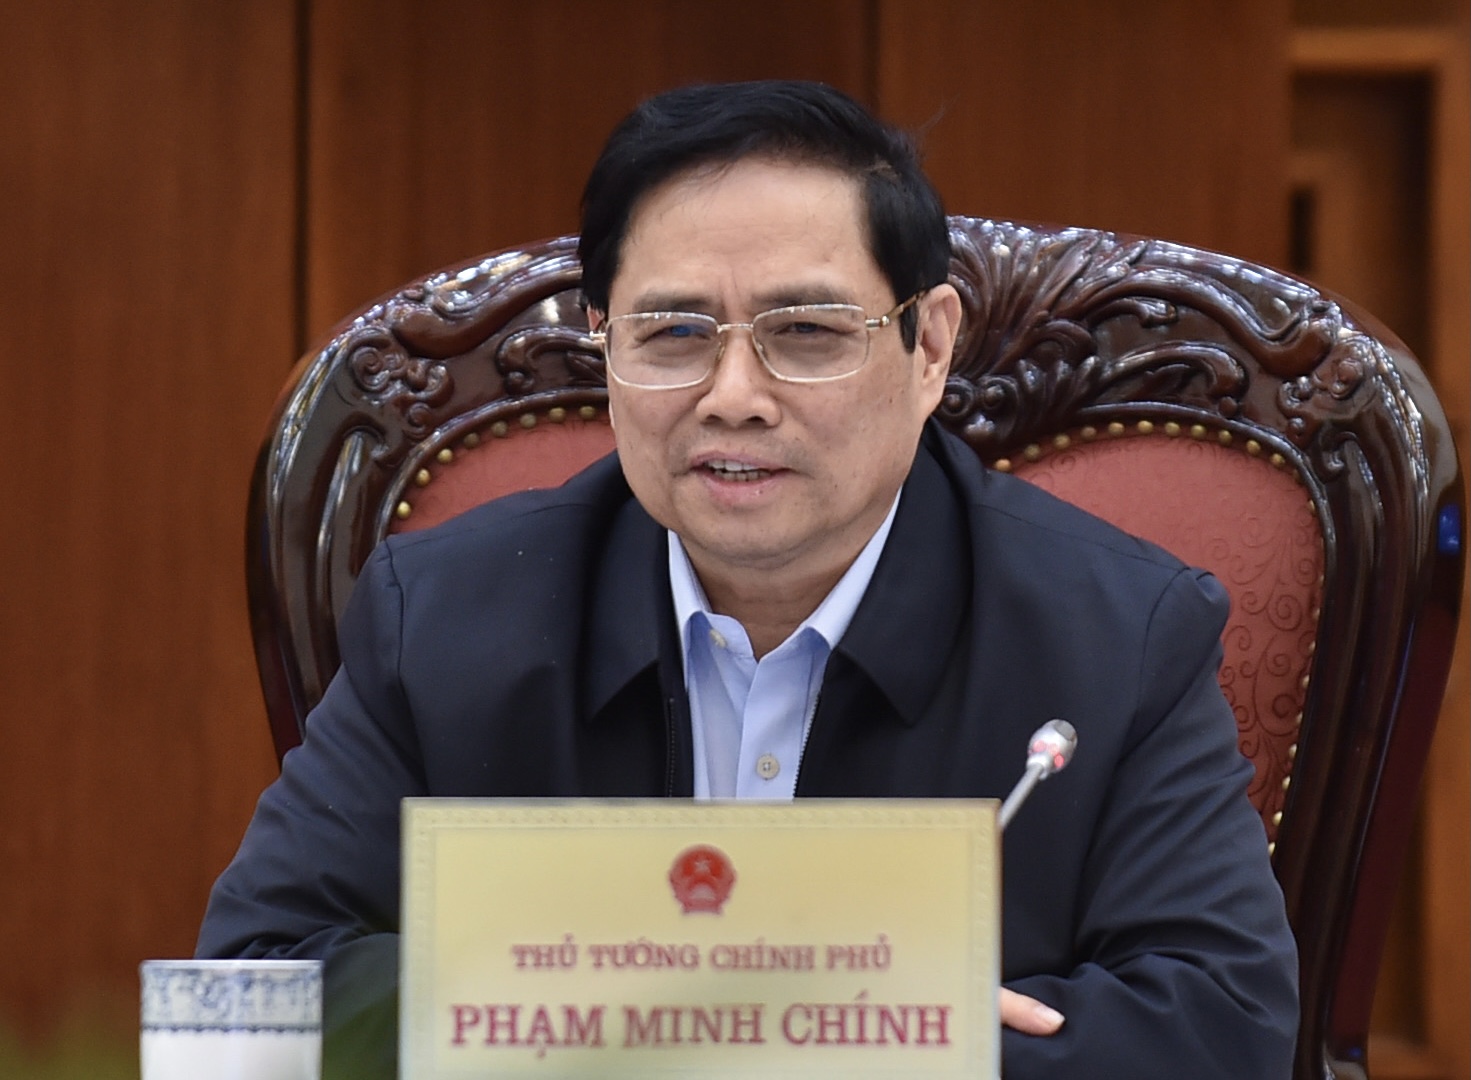 Thủ tướng Phạm Minh Chính yêu cầu phải nâng cao chất lượng đội ngũ cán bộ của Viện Hàn lâm Khoa học và Công nghệ Việt Nam, càng nhiều các nhà nghiên cứu có chất lượng cao càng tốt